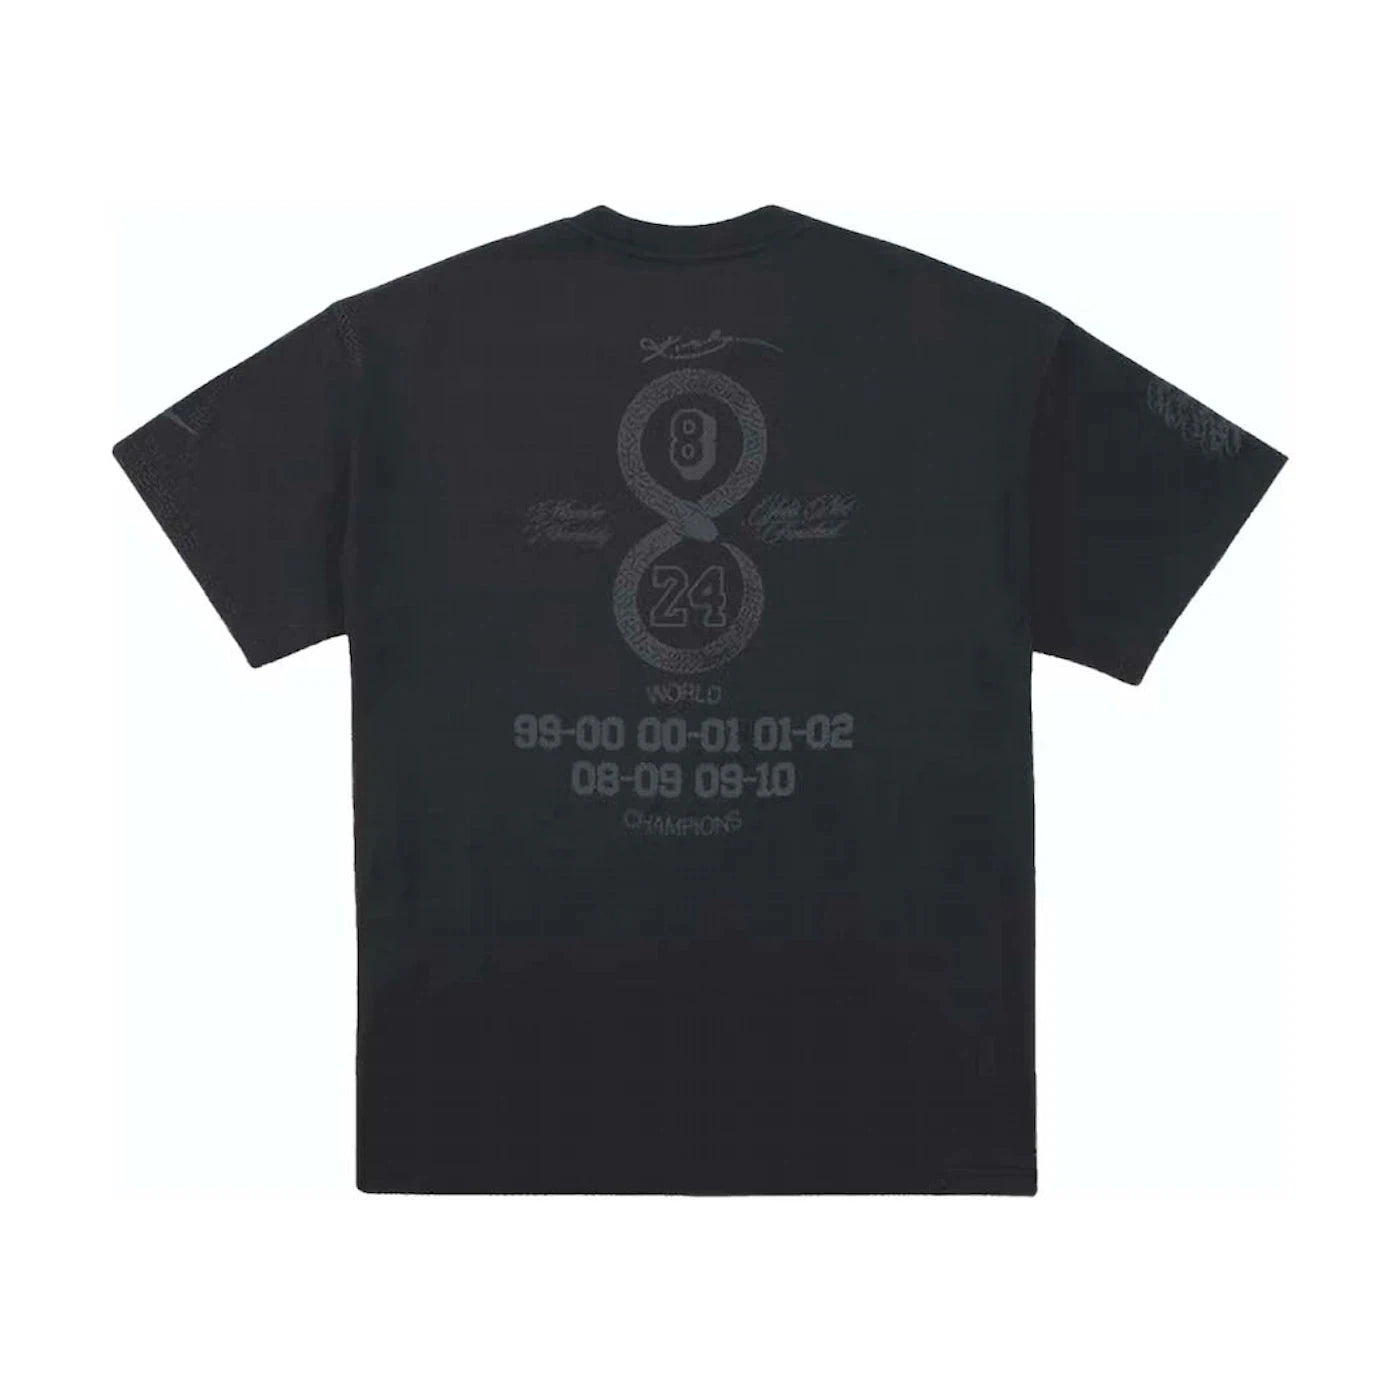 Nike - Kobe Mamba Mentality T-Shirt